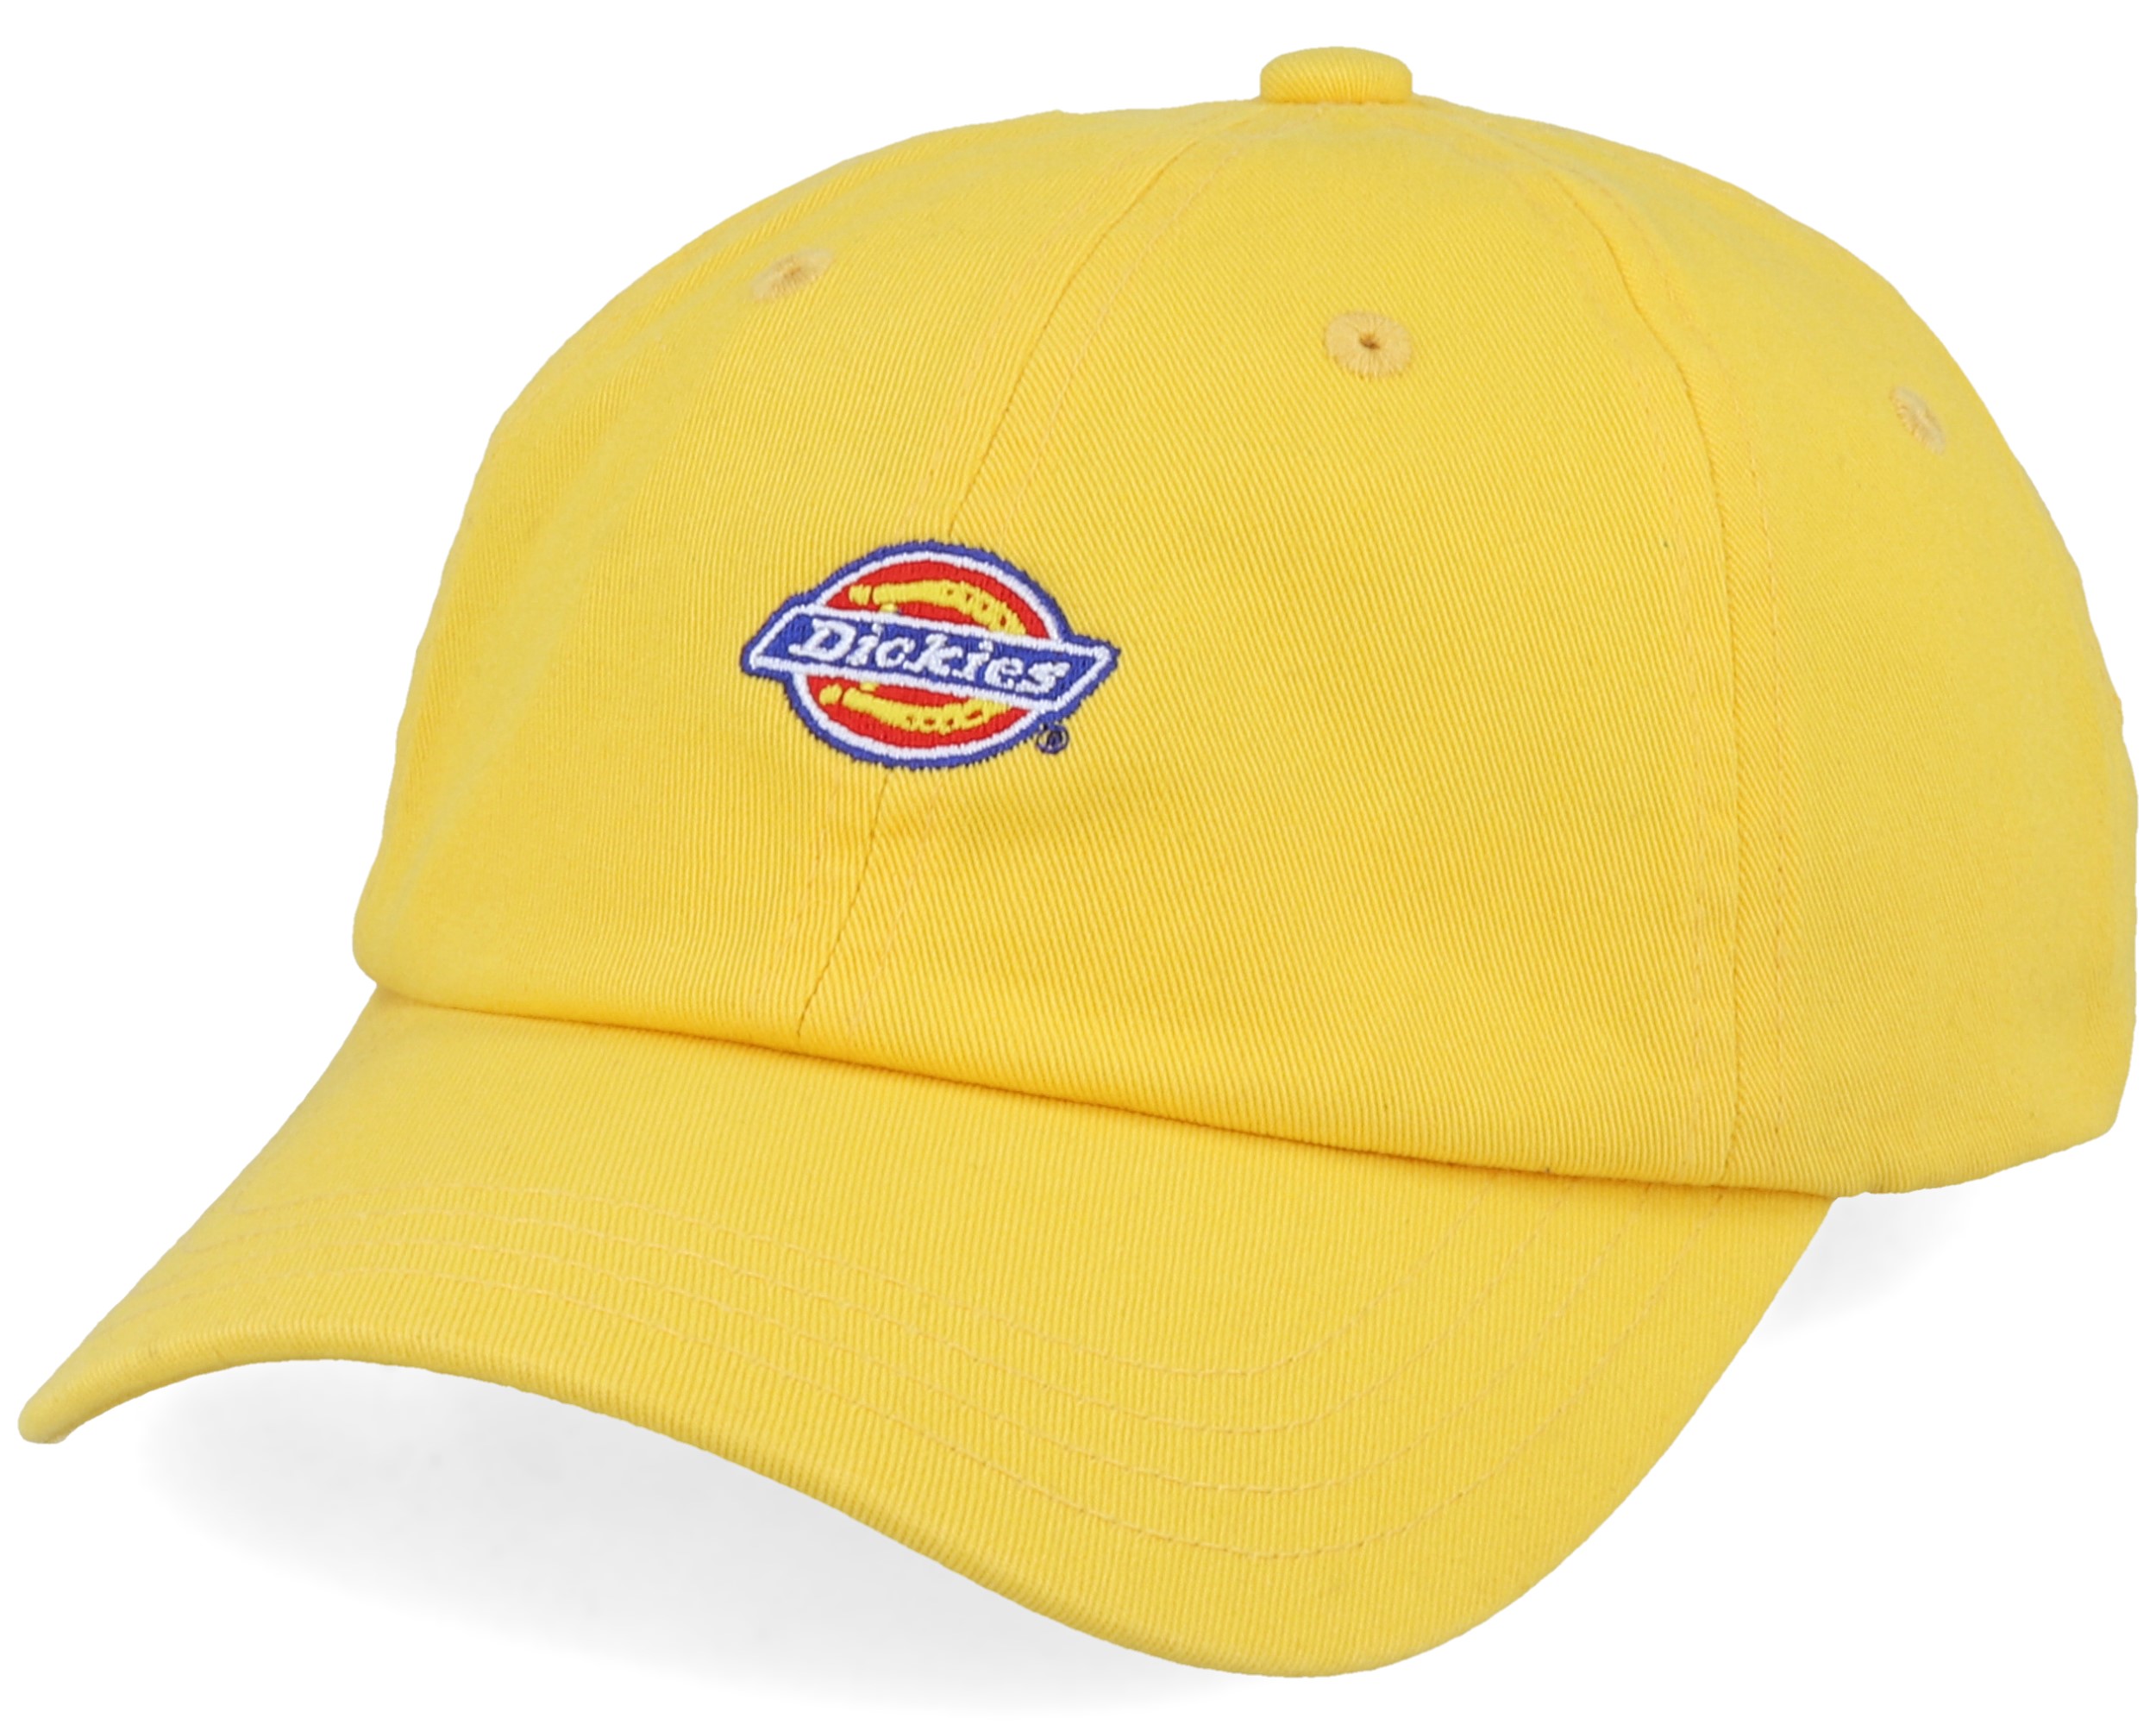 Hardwick Spectra Yellow Adjustable - Dickies cap | Hatstore.com.hk